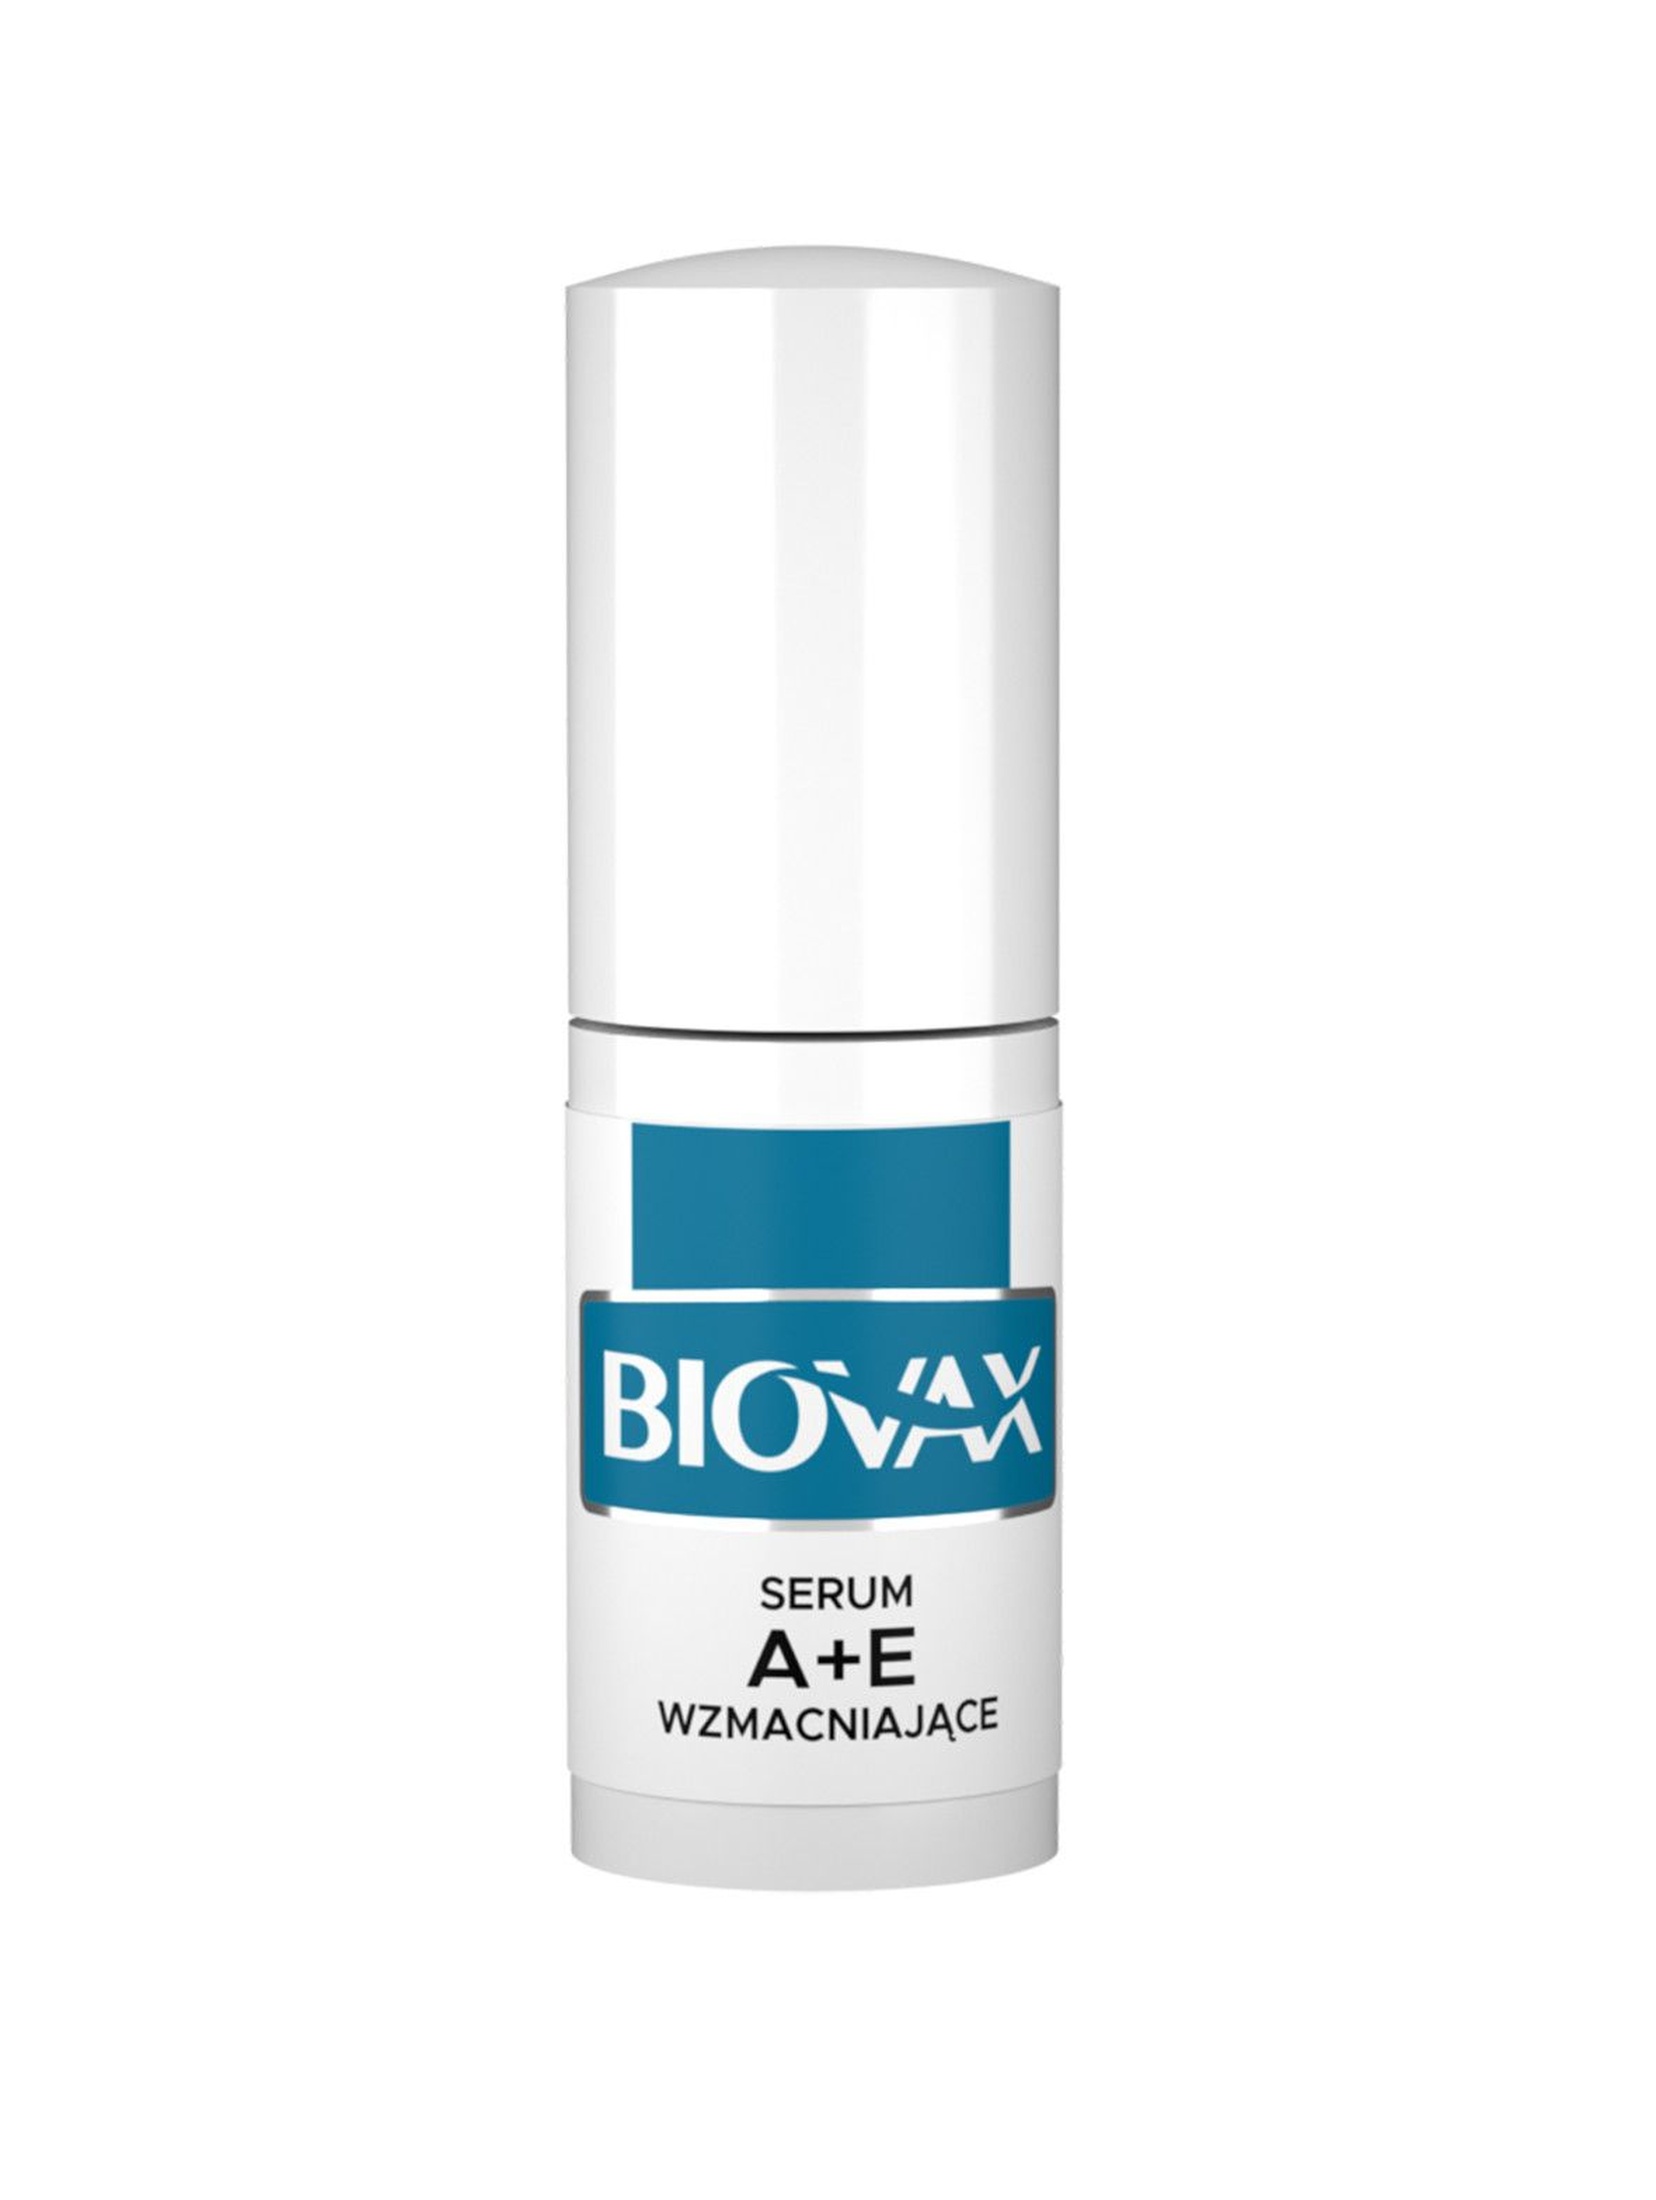 Biovax A+E serum wzmacniające do włosów 15ml